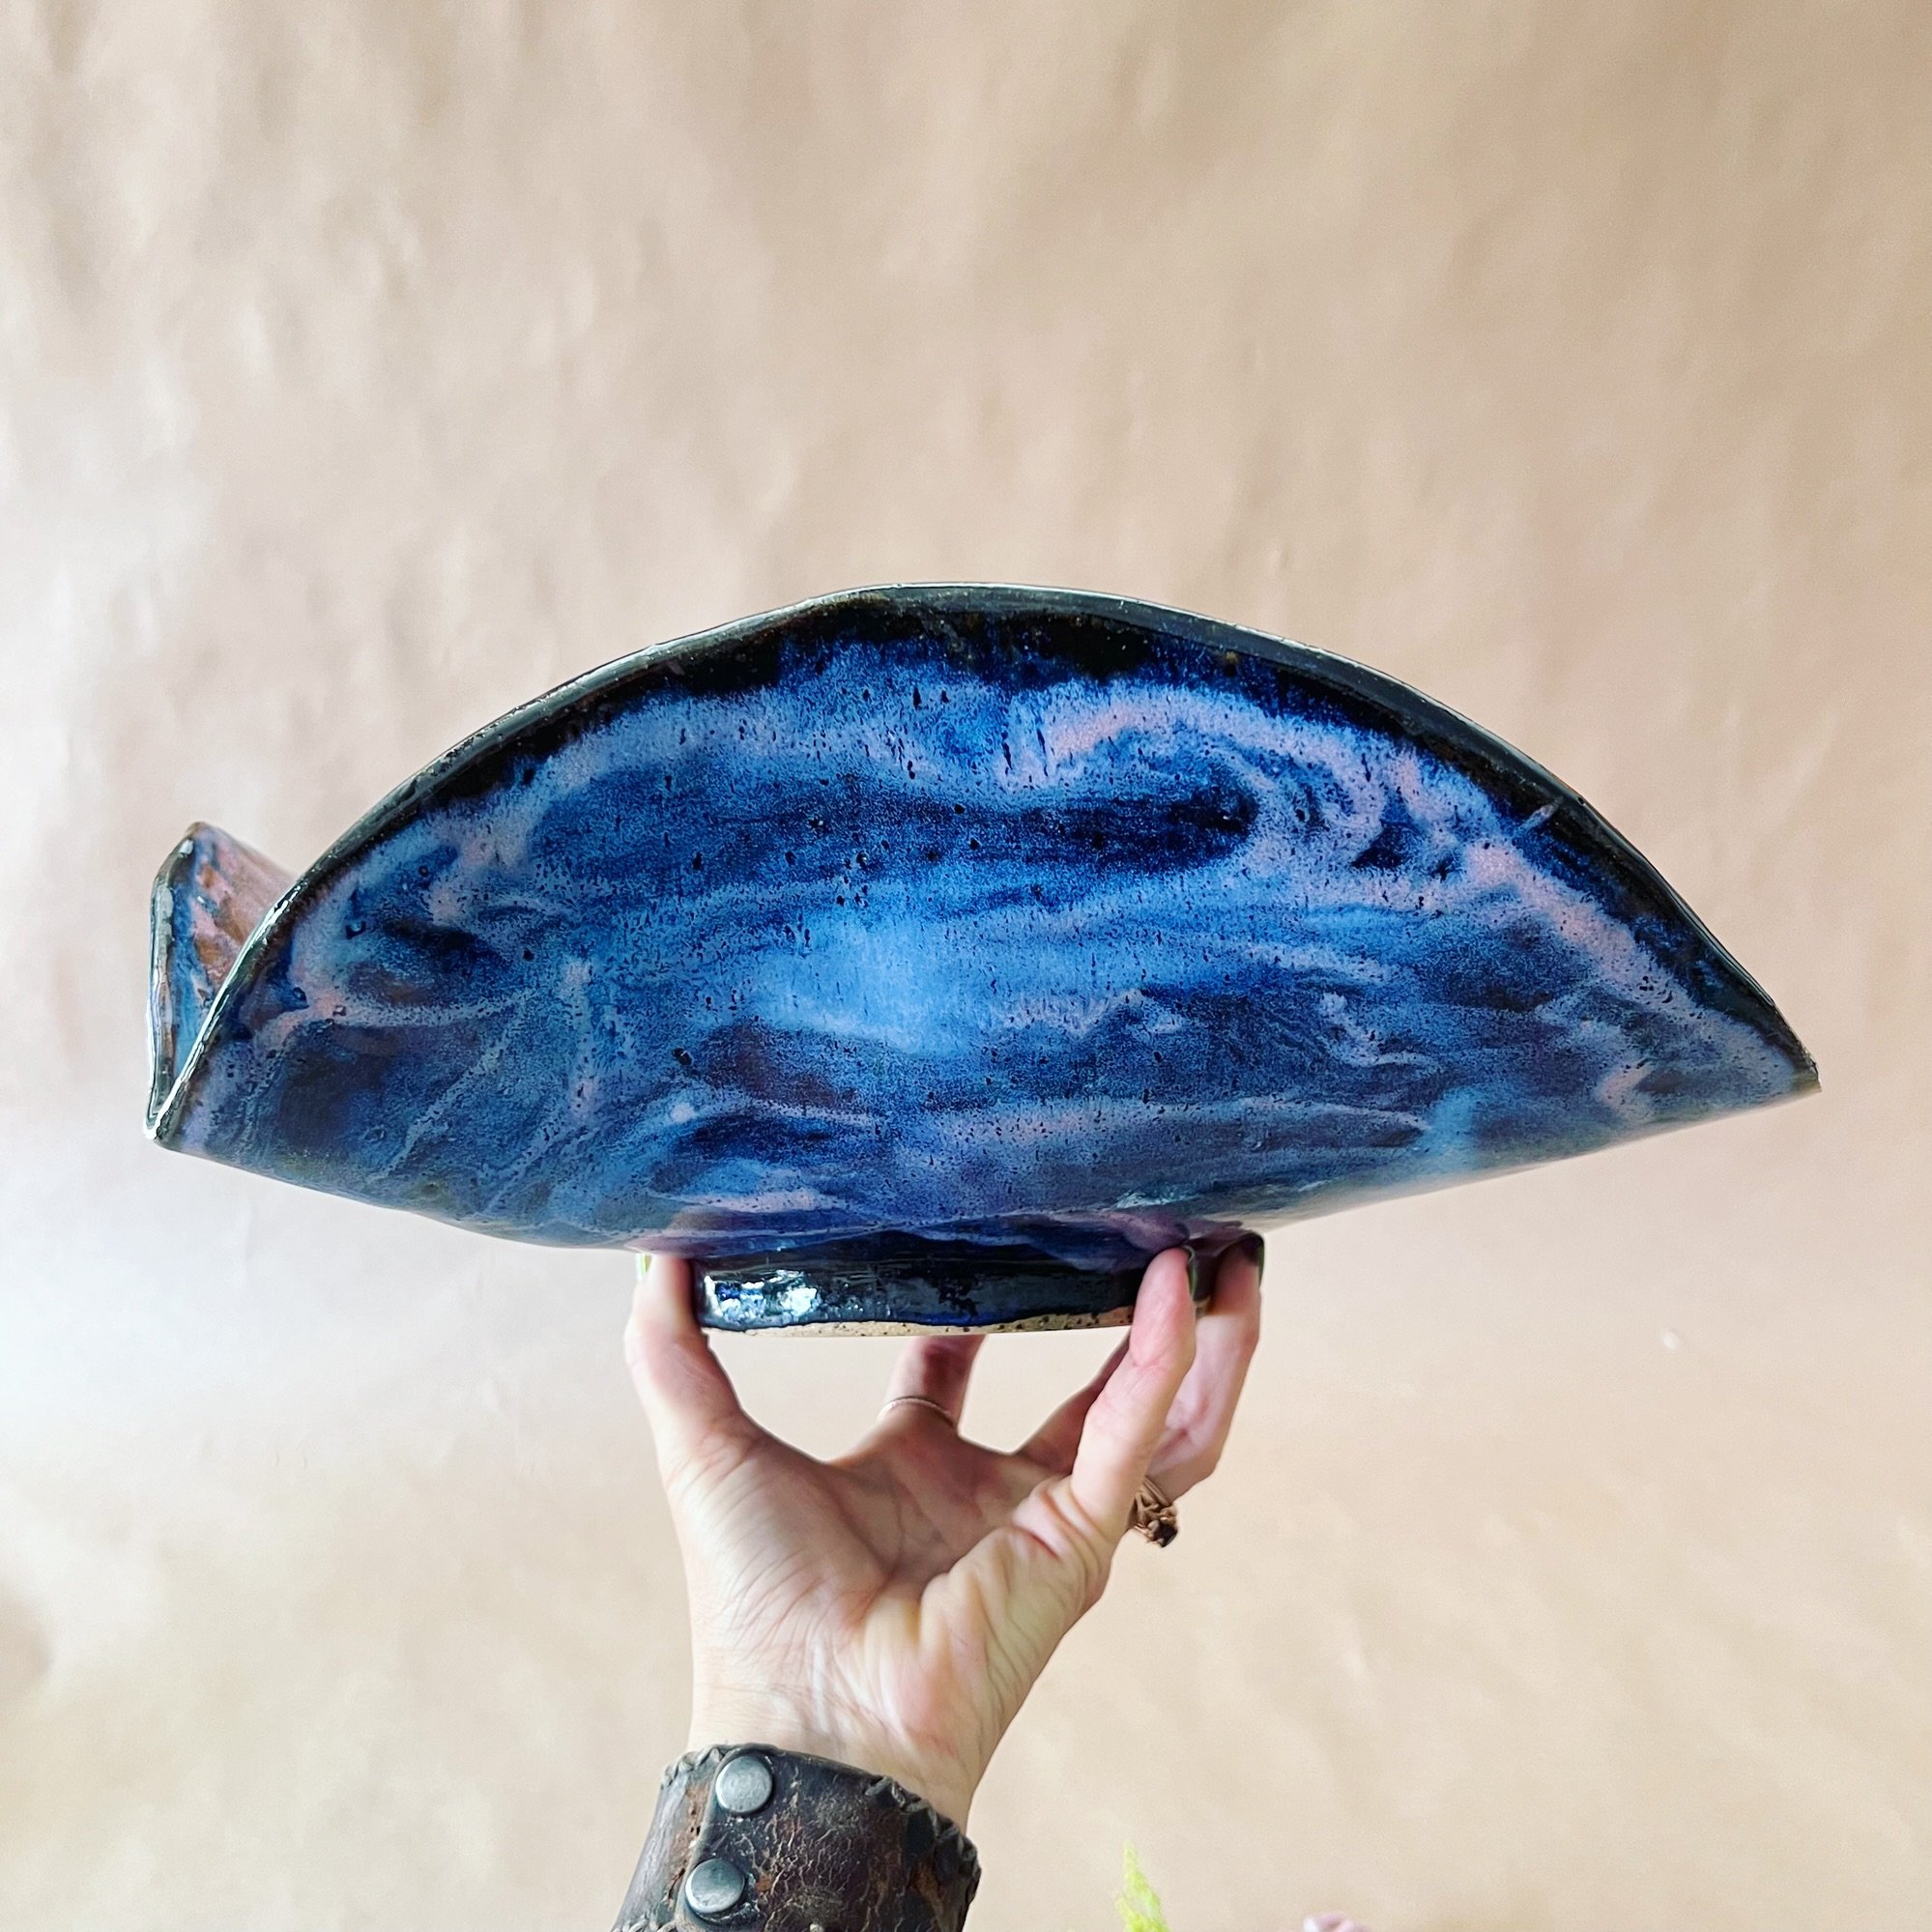 Underside of the &lsquo;Midnight Tides&rsquo; Manta Bowl&hellip; available in the shop! Link in pic or my bio. 🌊

#ceramicbowl #mantabowl #nicolamoorestudio #pottery #ceramics #functionalart #ceramicart #oceanvibes #blueceramics #oceanceramics #ocea